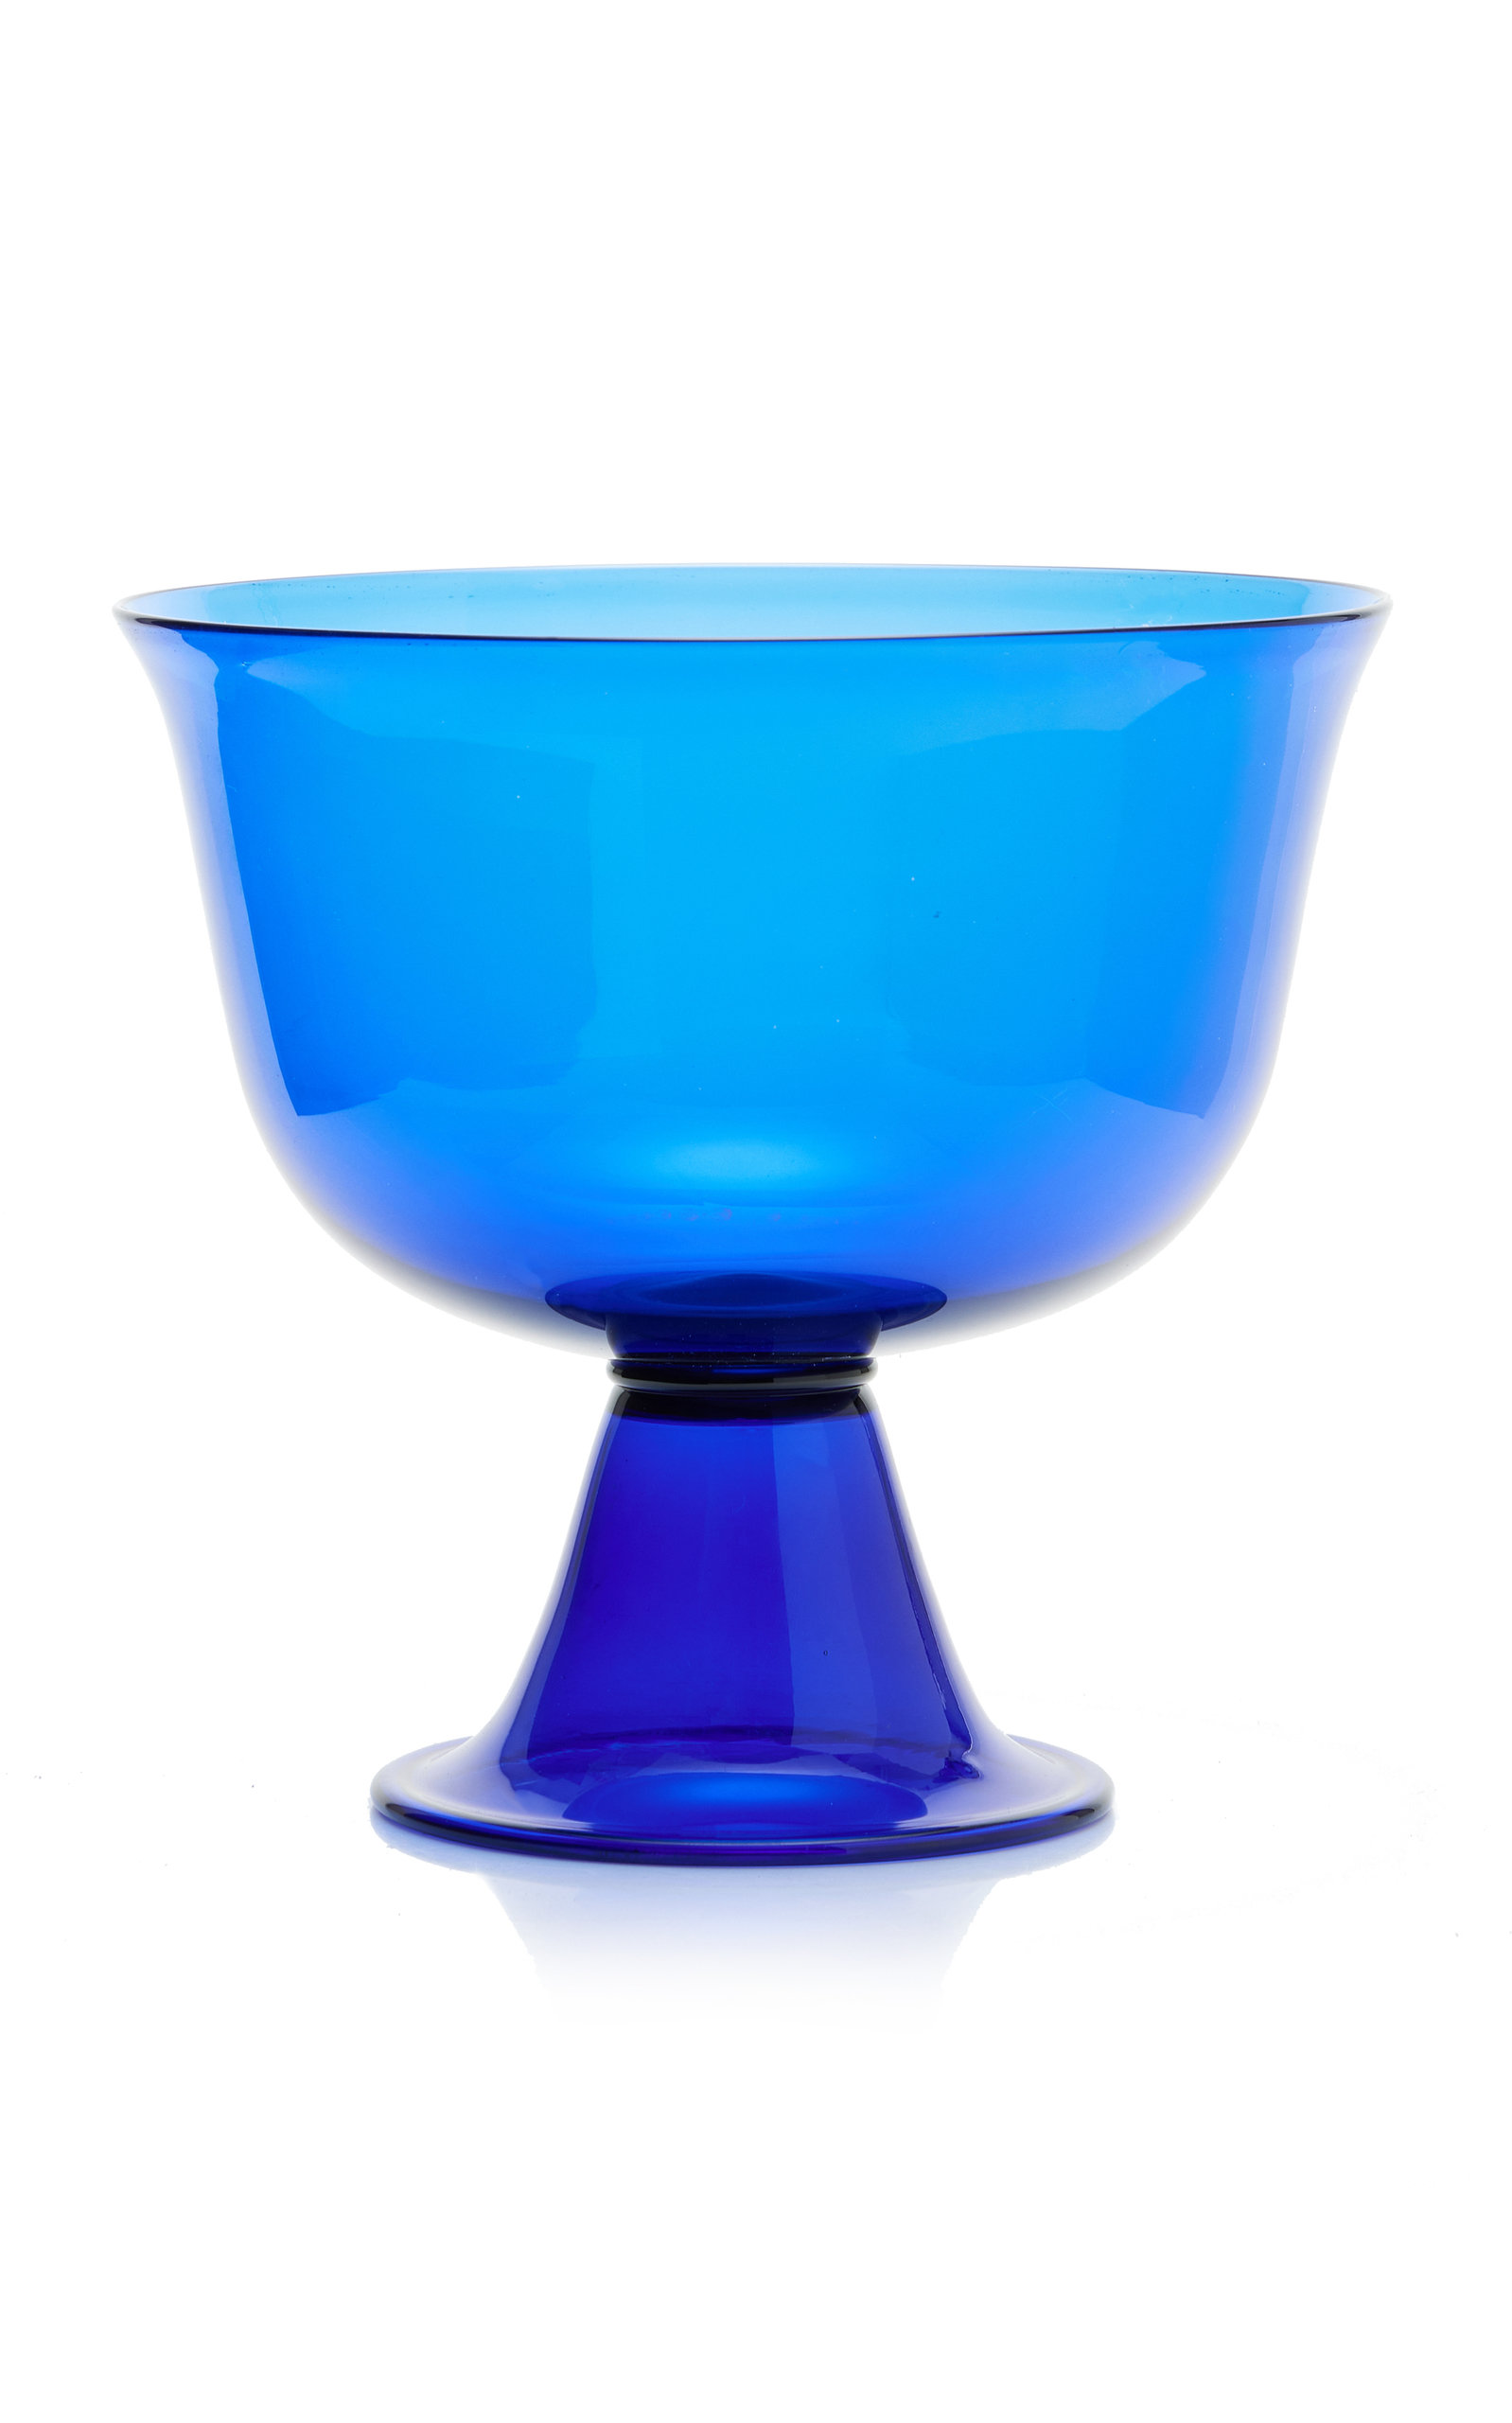 Moda Domus Barovier Large Bowl In Blue